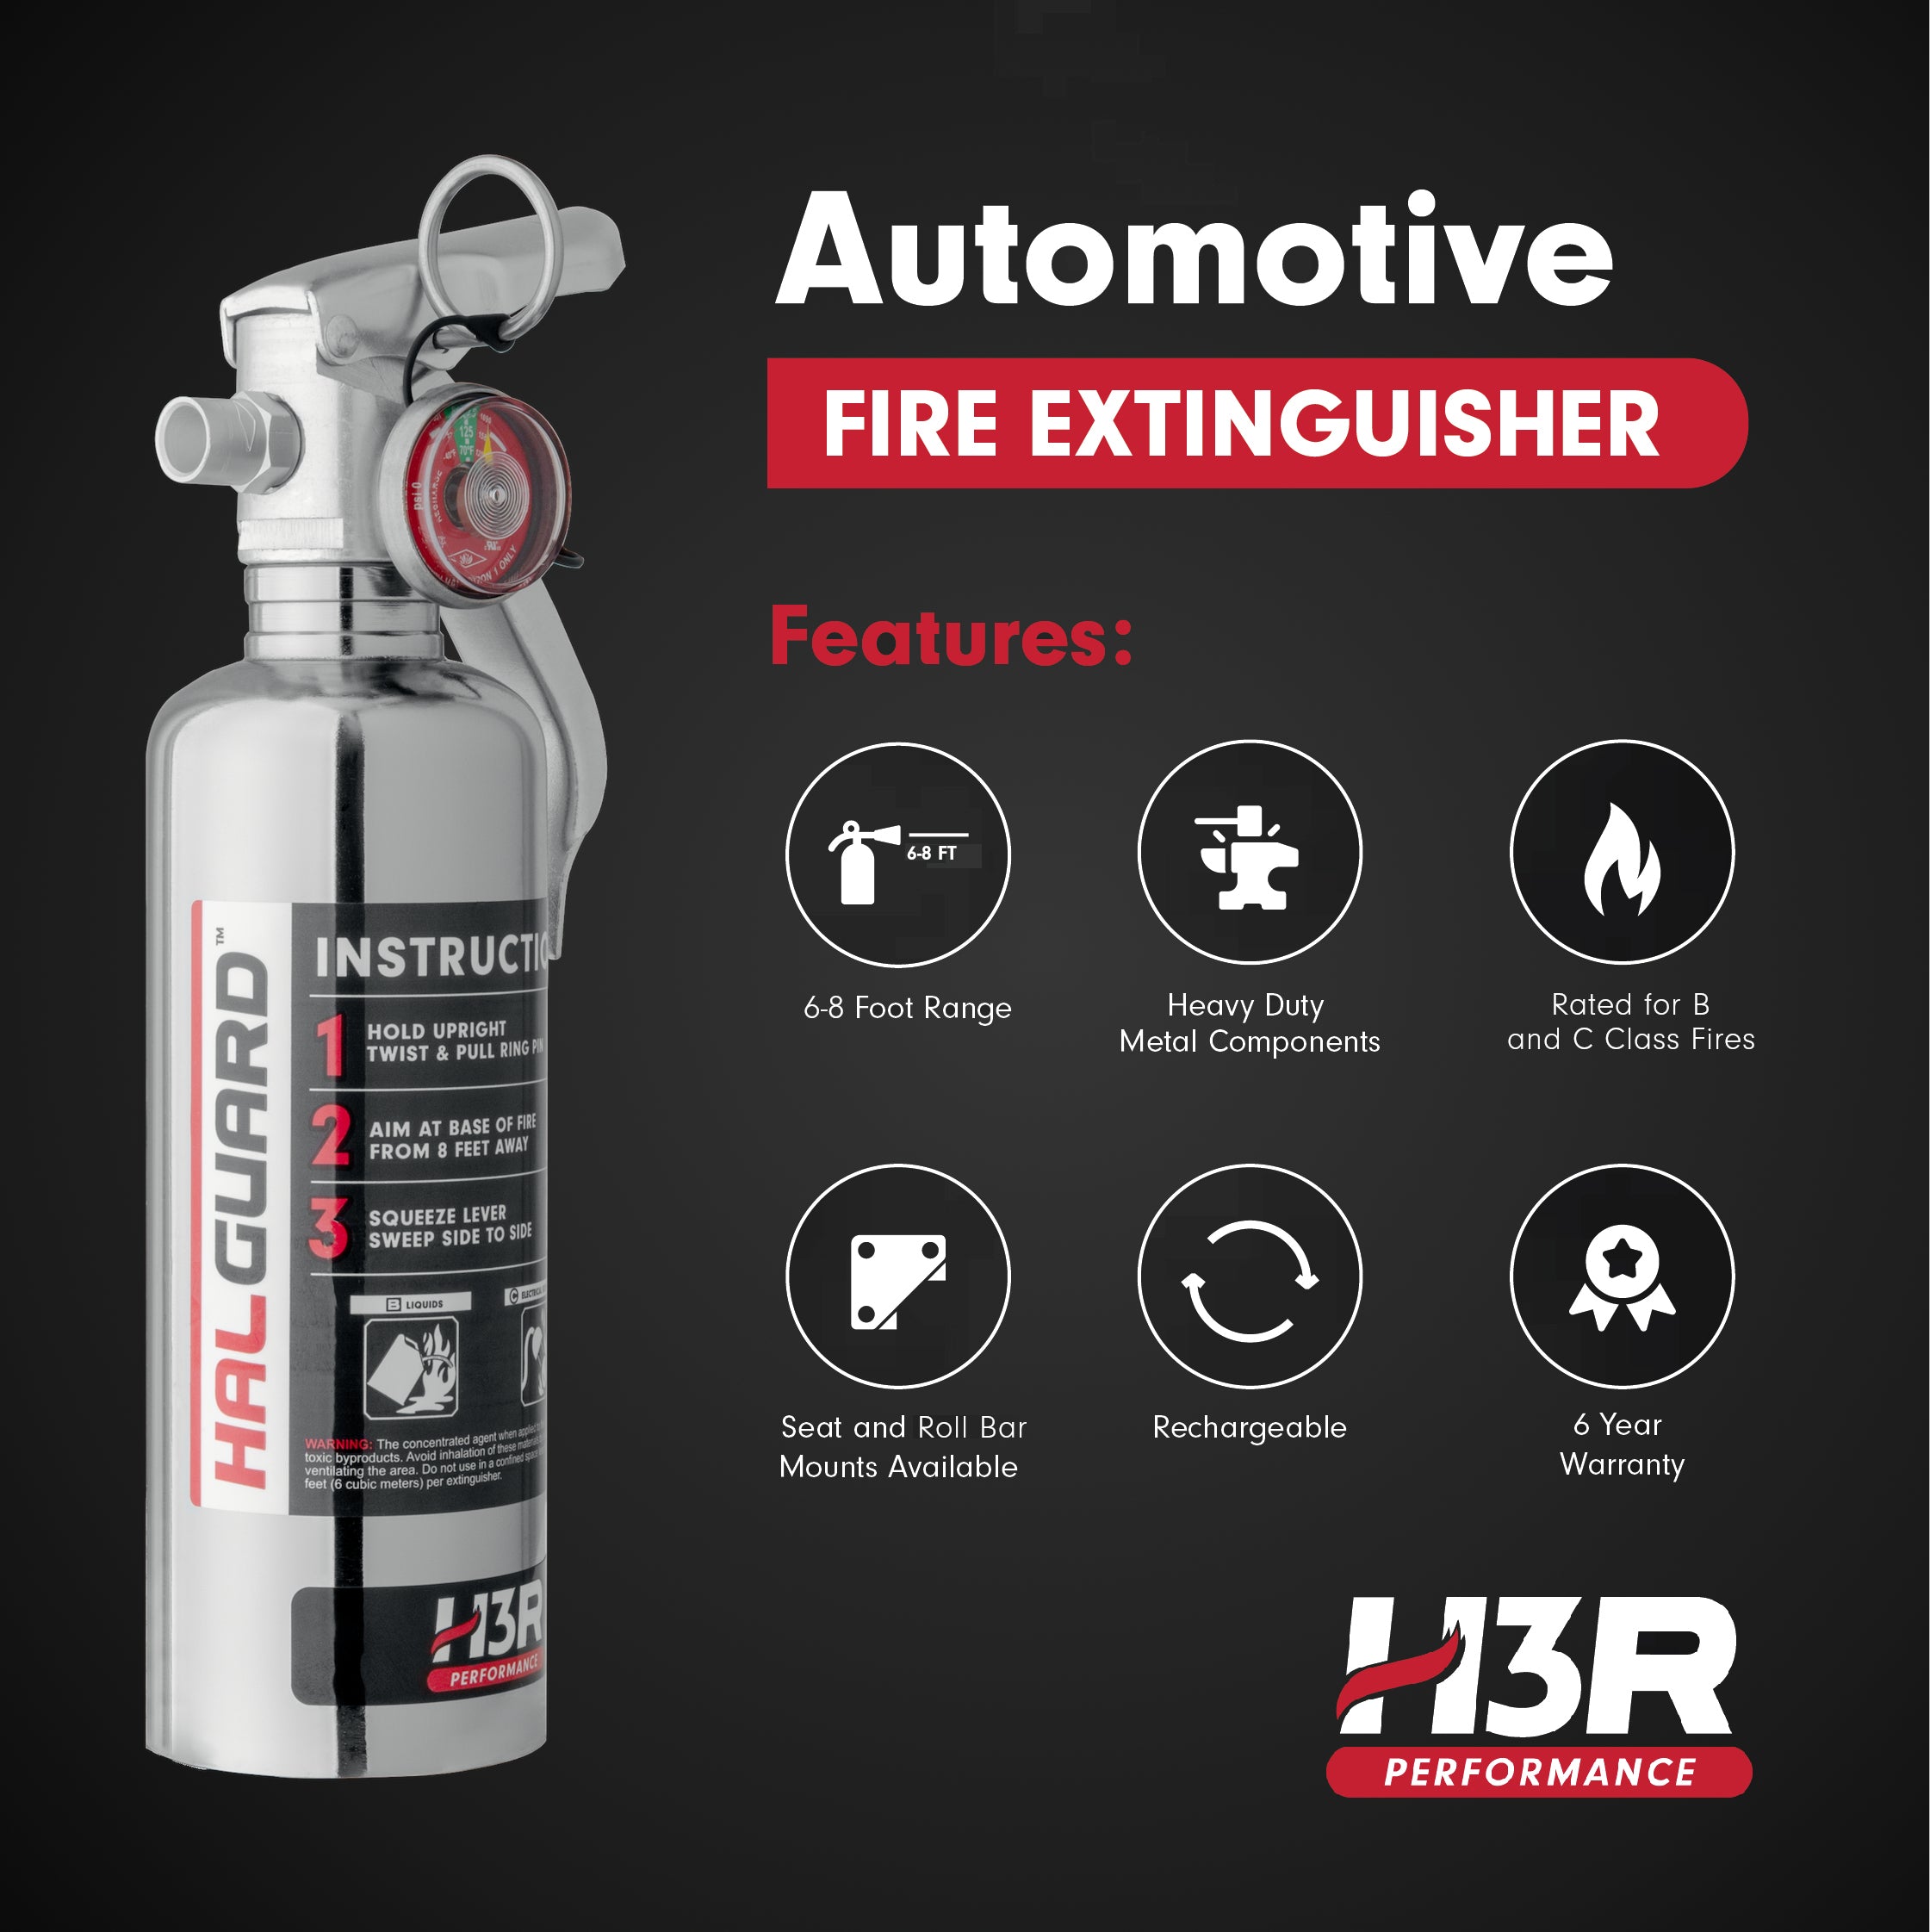 HalGuard Clean Agent Car Fire Extinguisher - 1.4 lb.